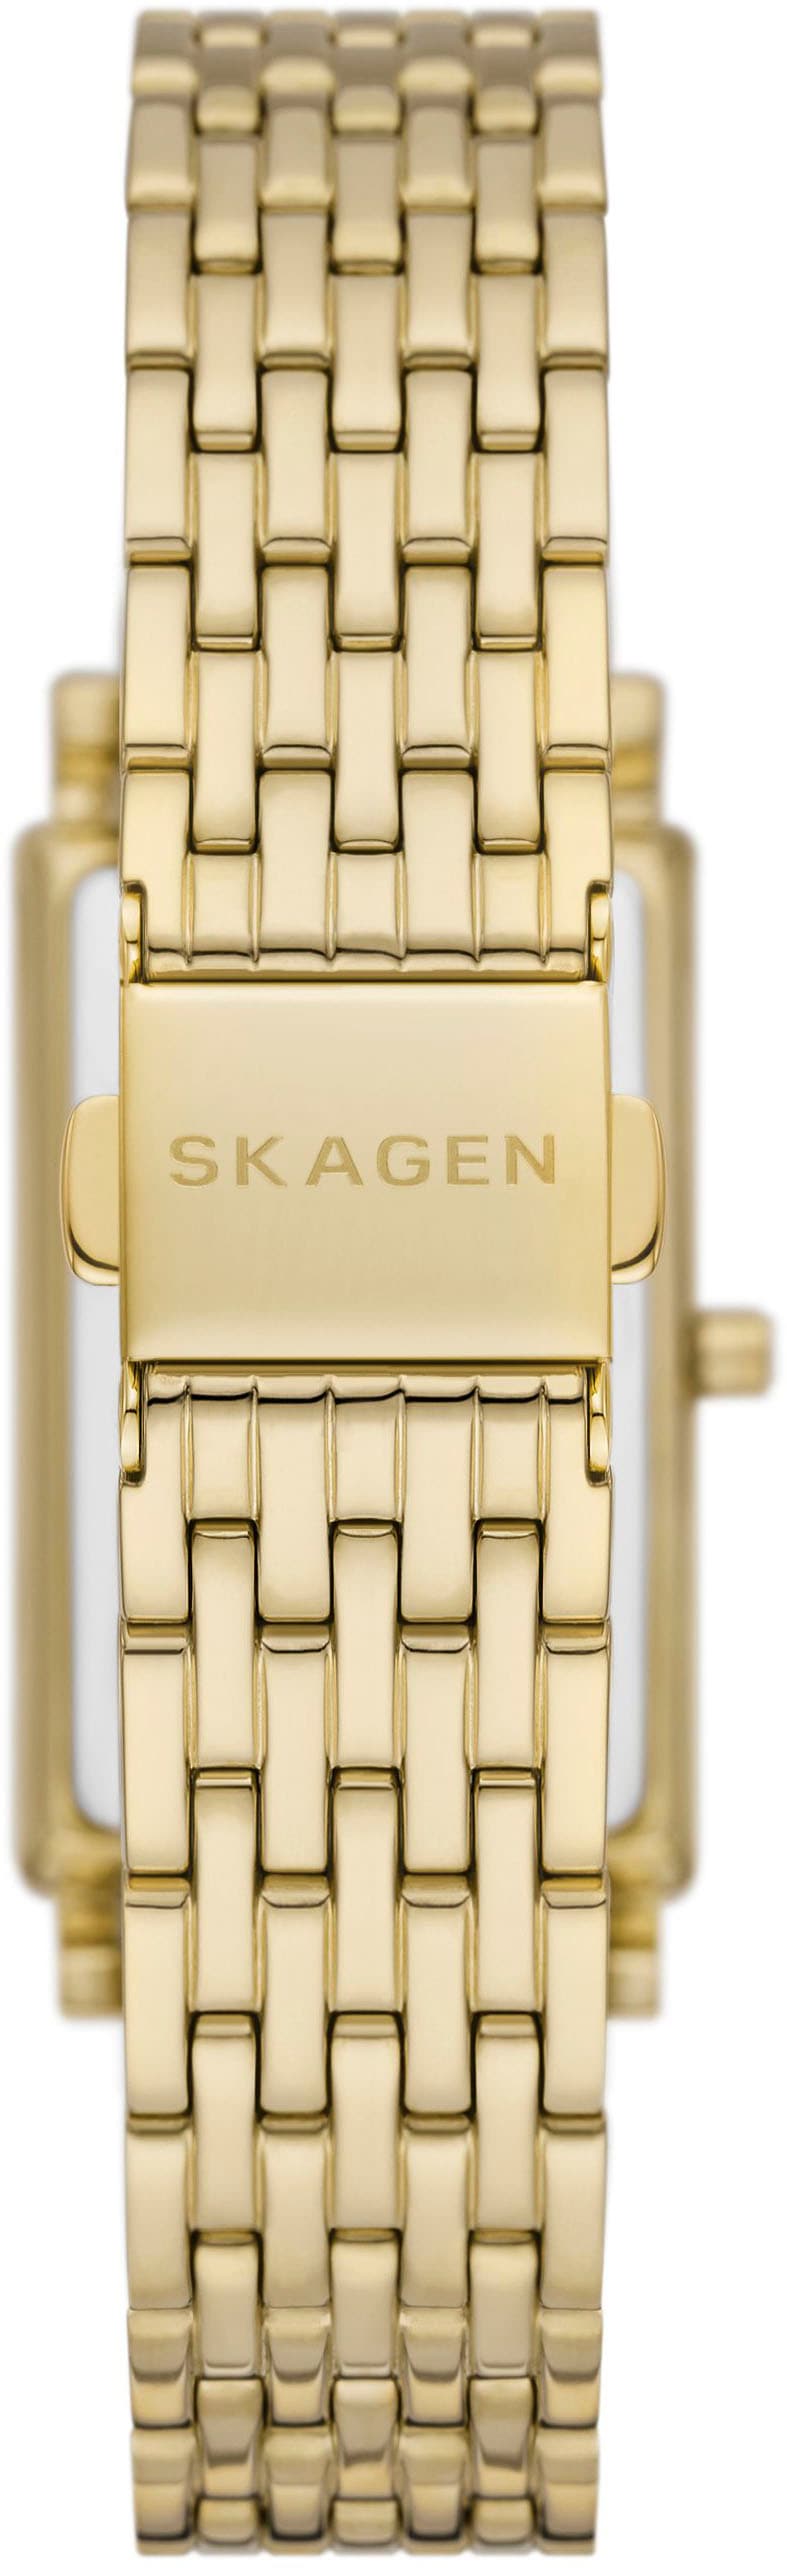 Skagen Quarzuhr »HAGEN, SKW3113«, Armbanduhr, Damenuhr, analog